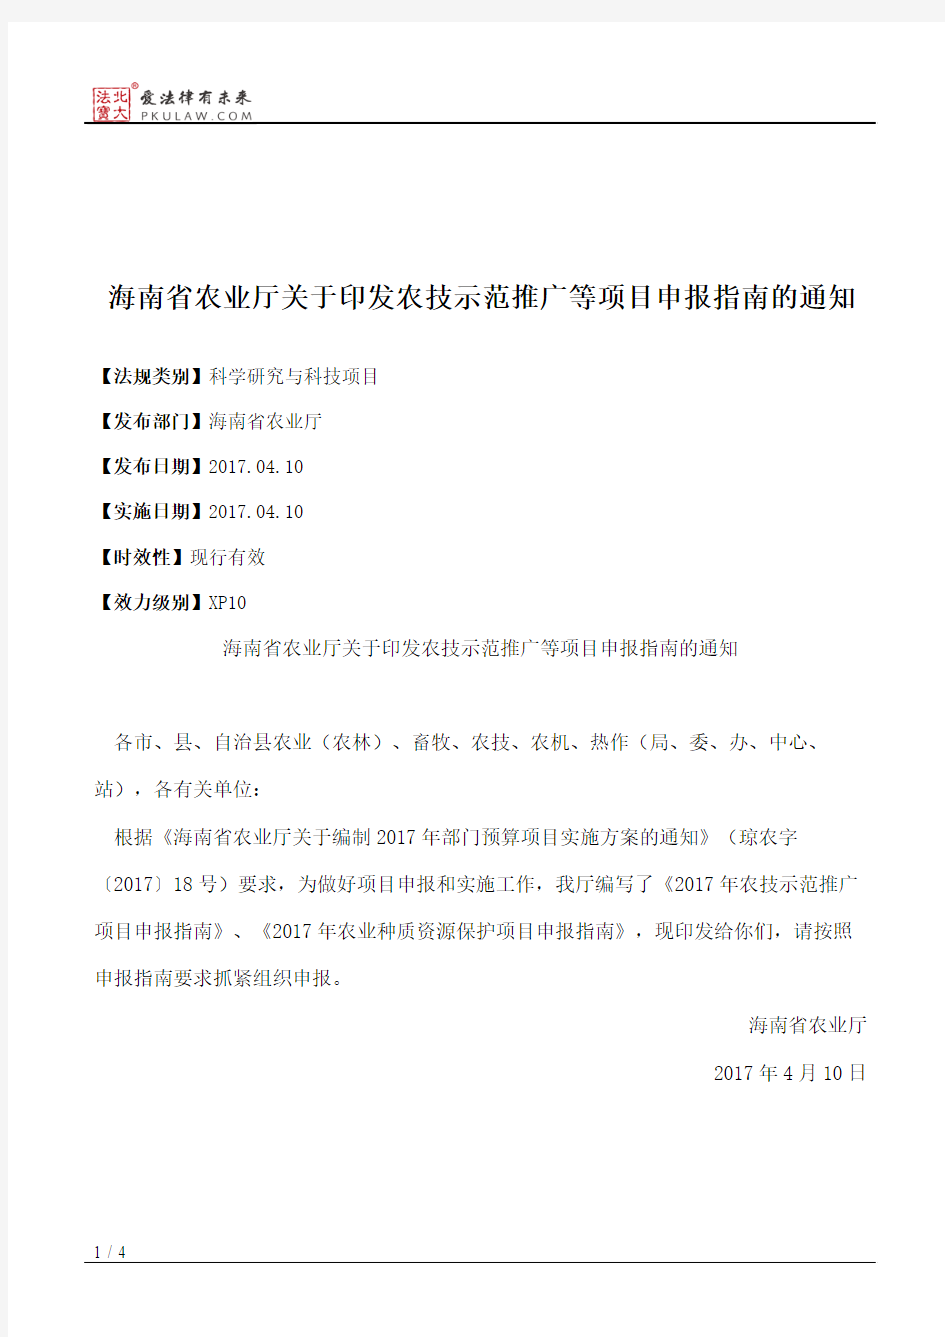 海南省农业厅关于印发农技示范推广等项目申报指南的通知